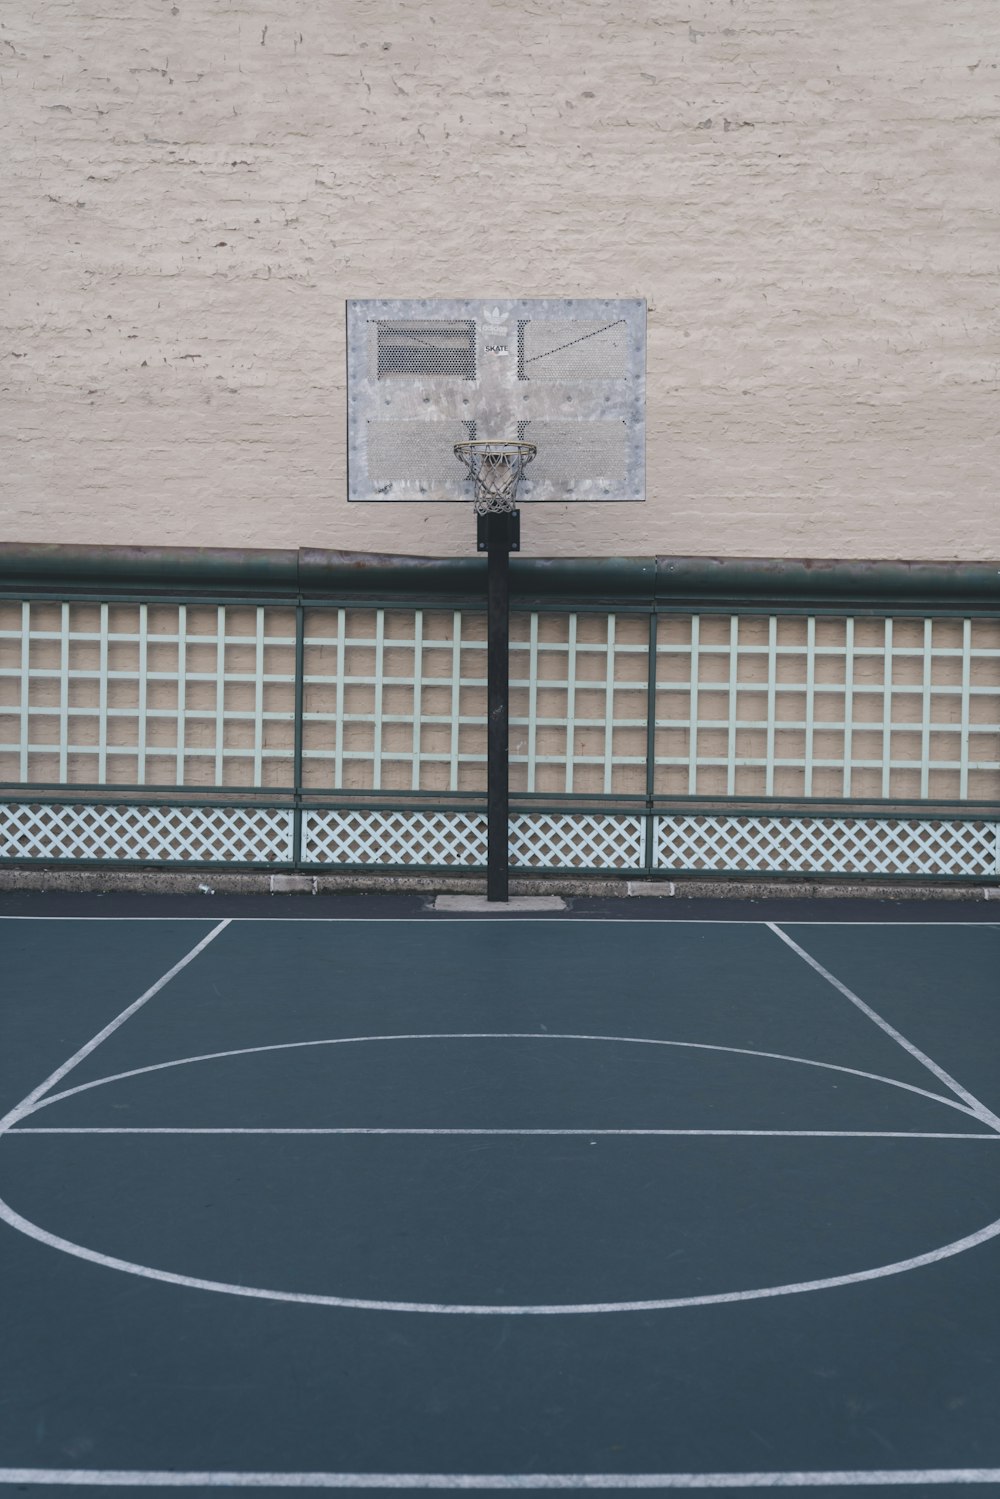 灰色のバスケットボールコート